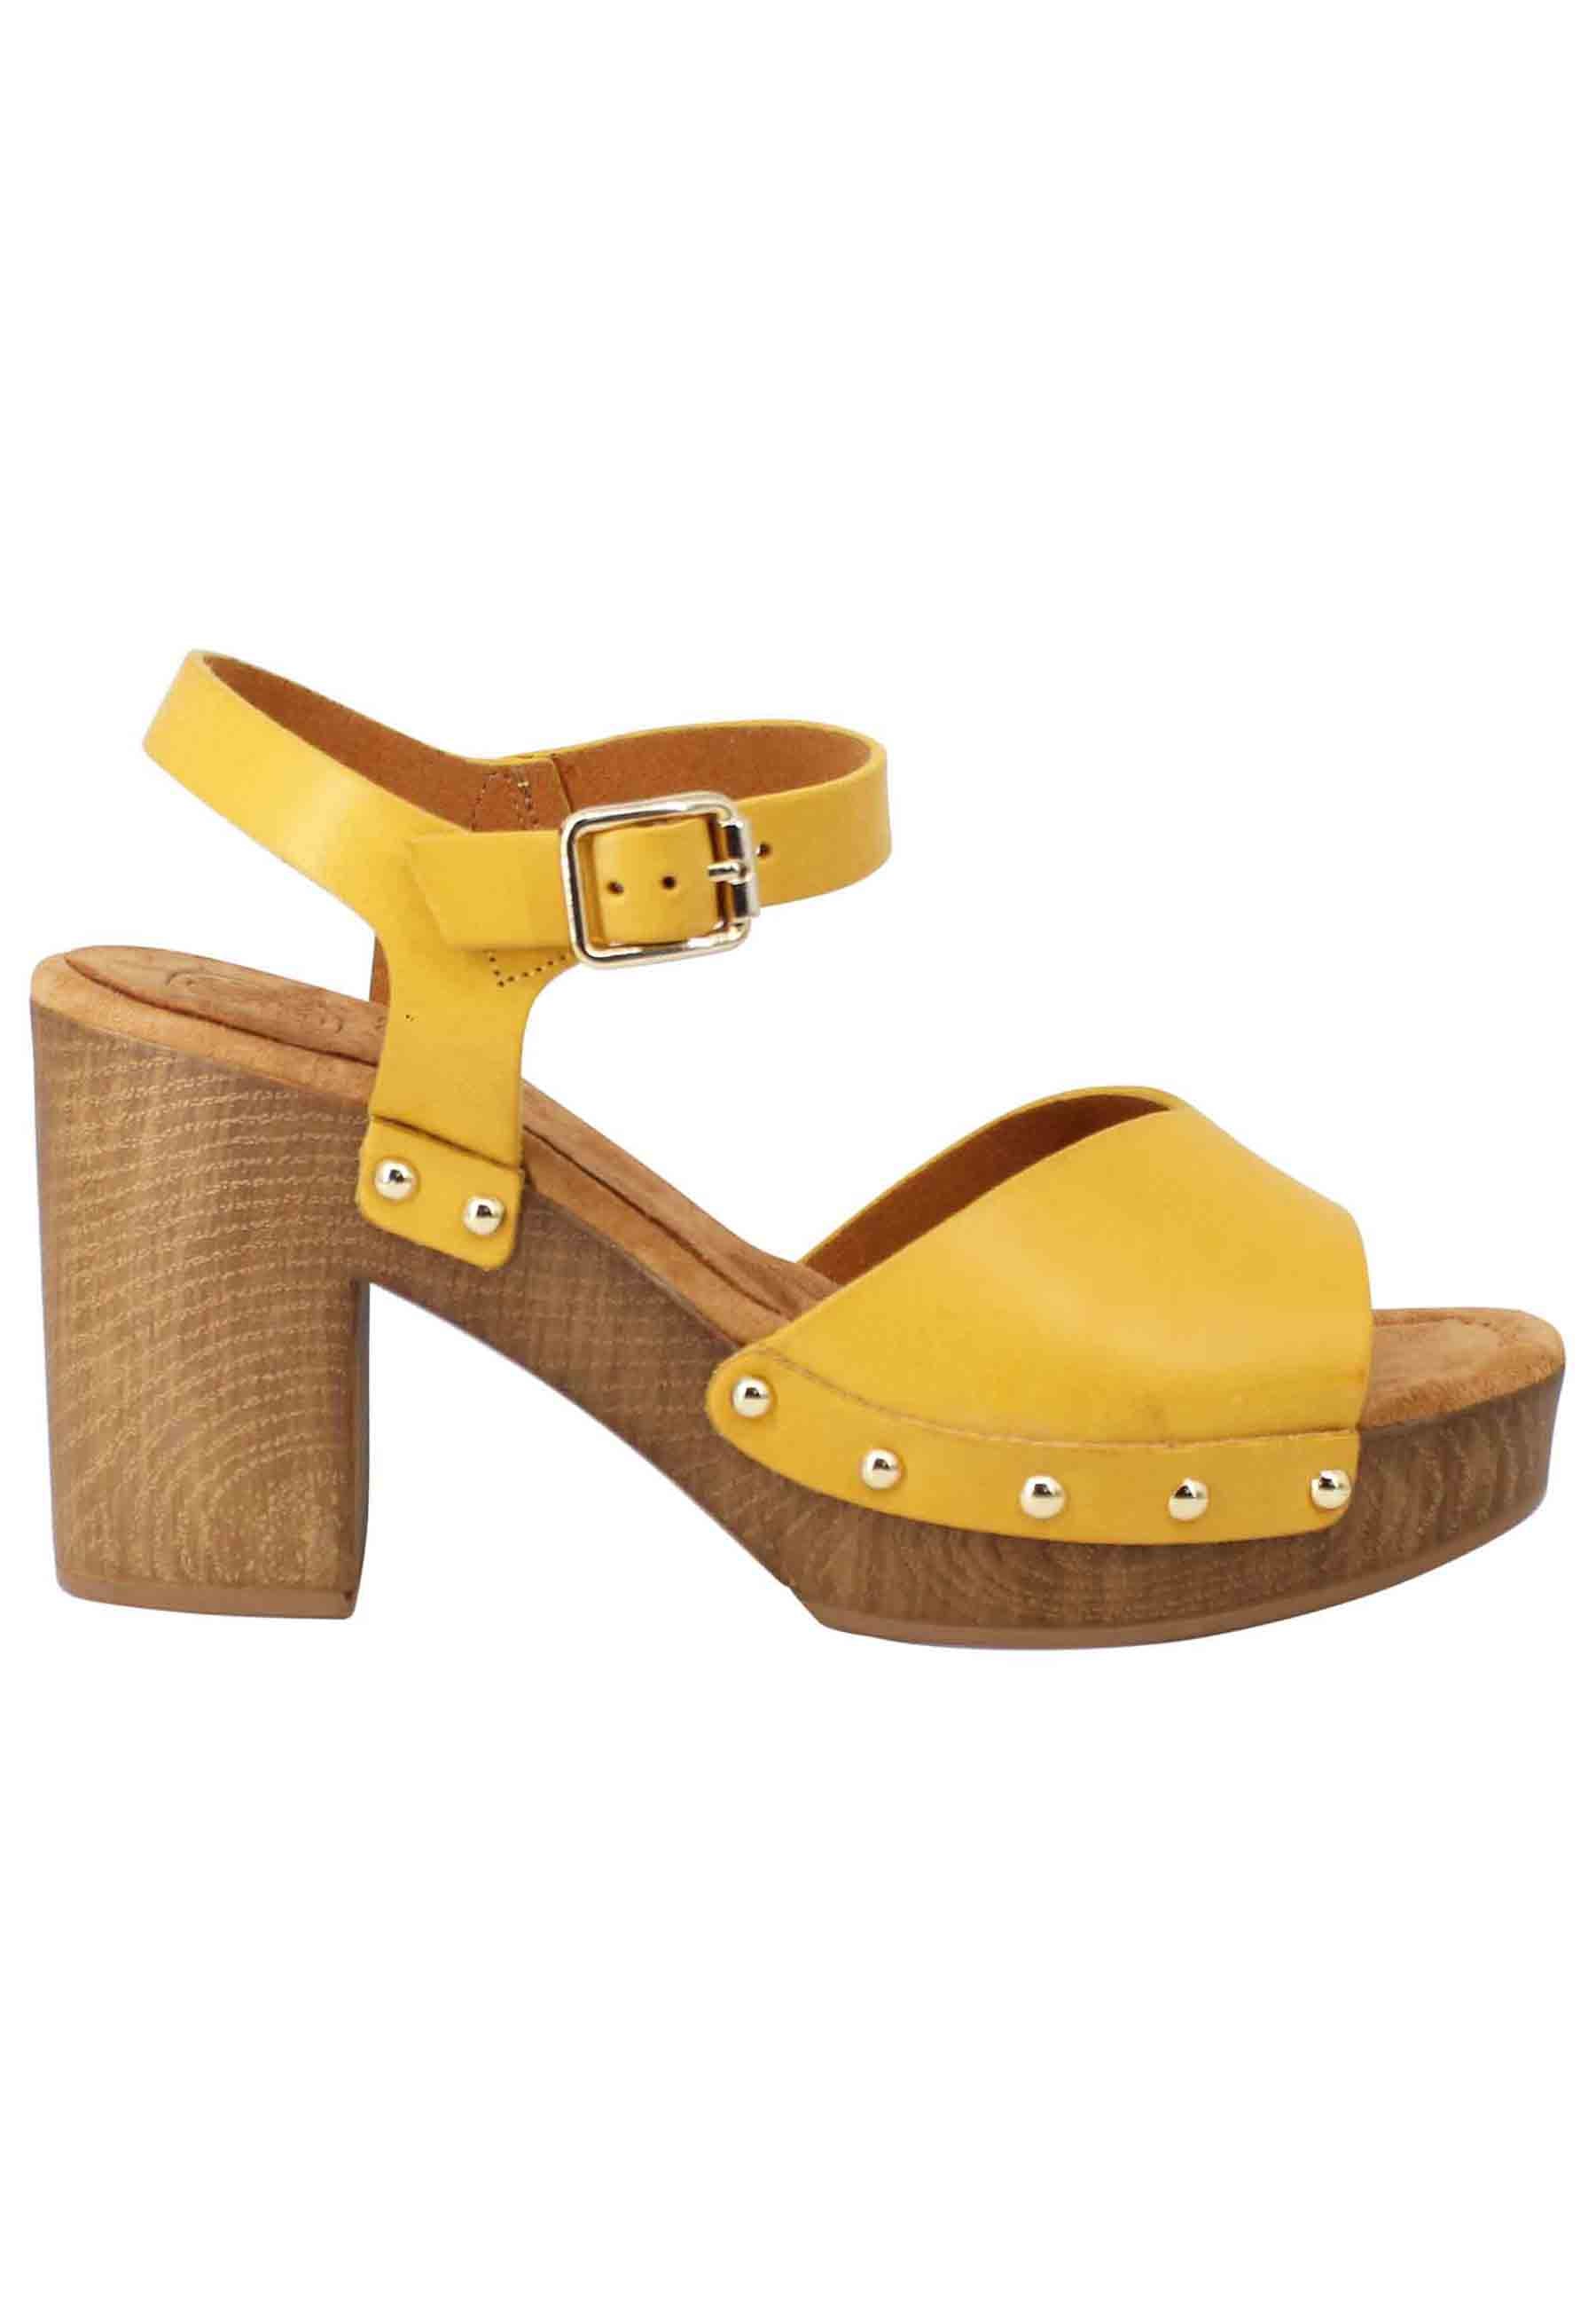 Sandales sabots femme à talon haut en cuir jaune